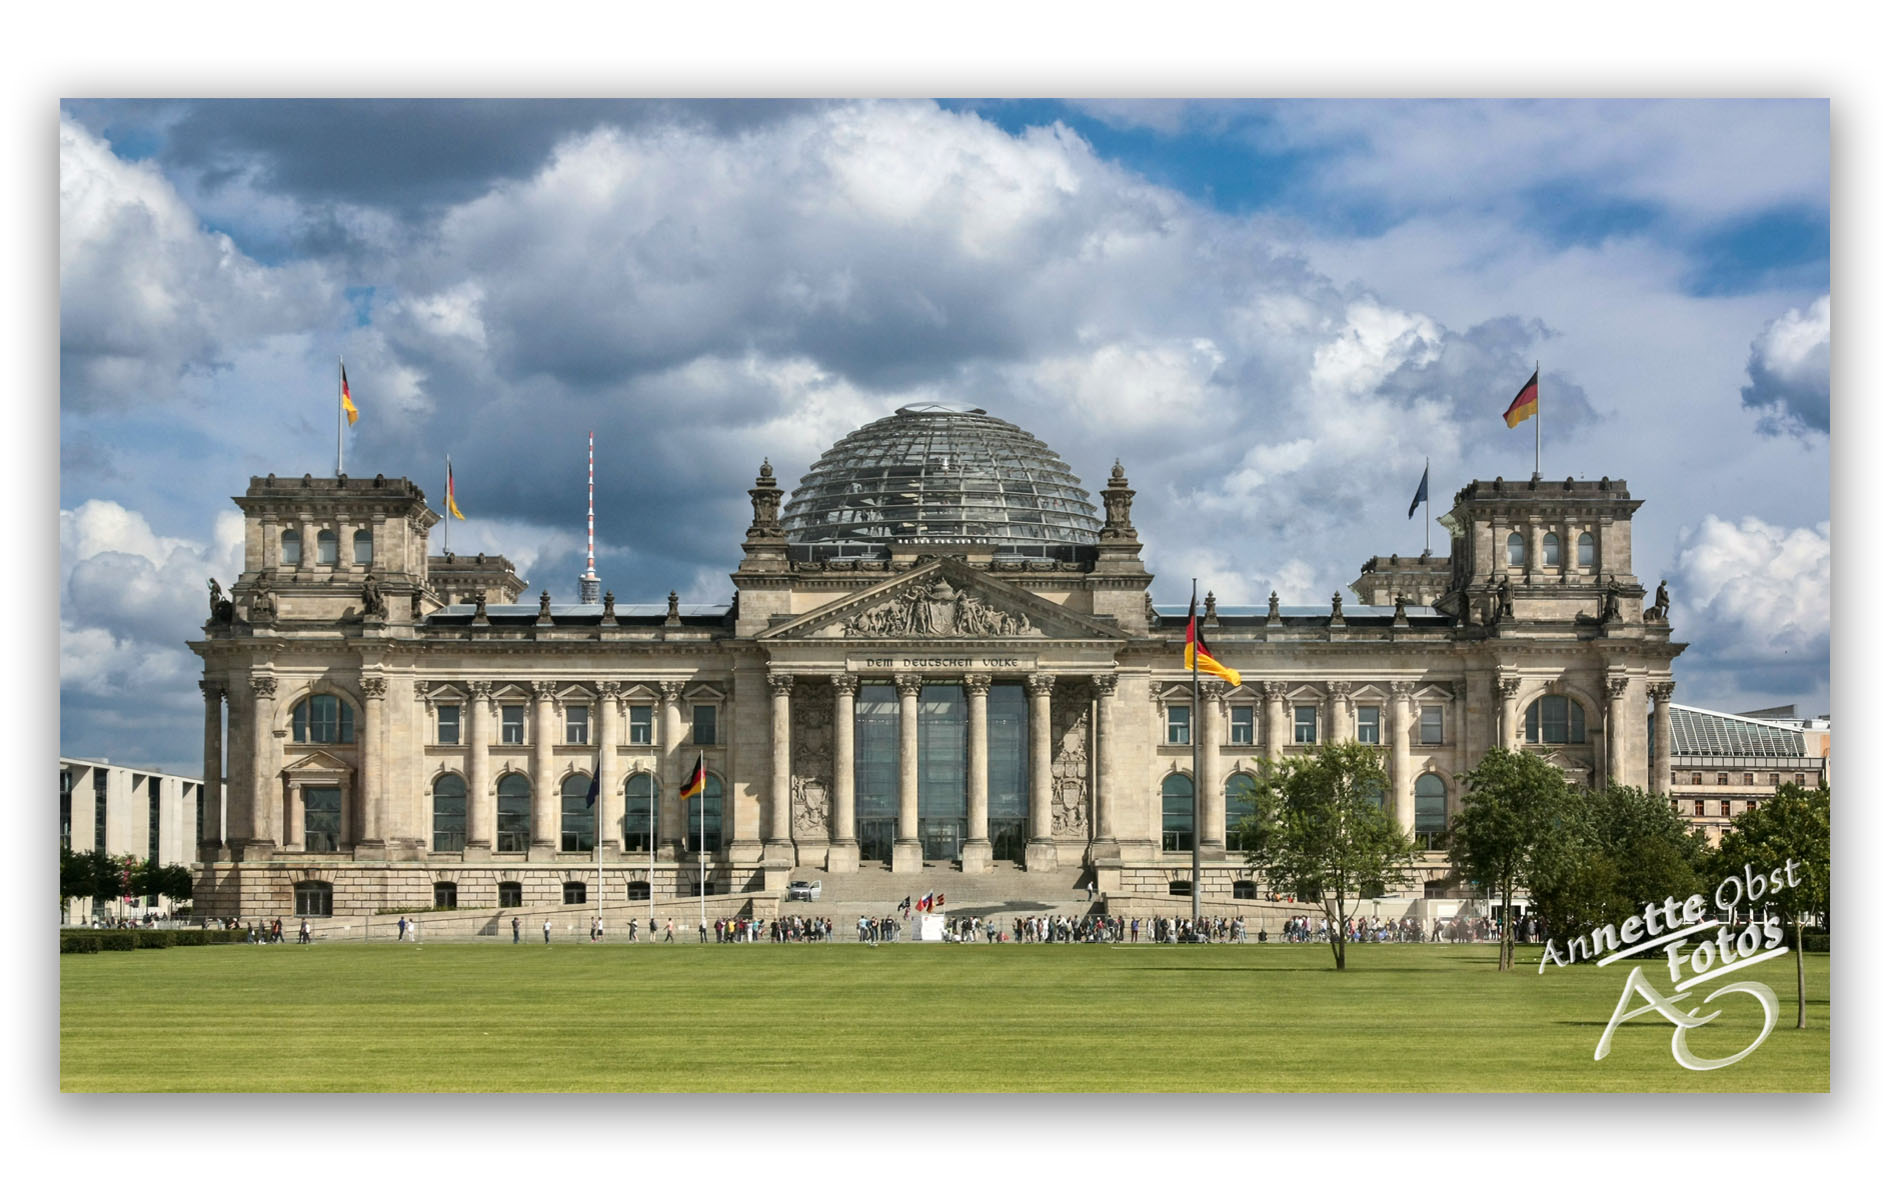 Berlin (Reichstag)